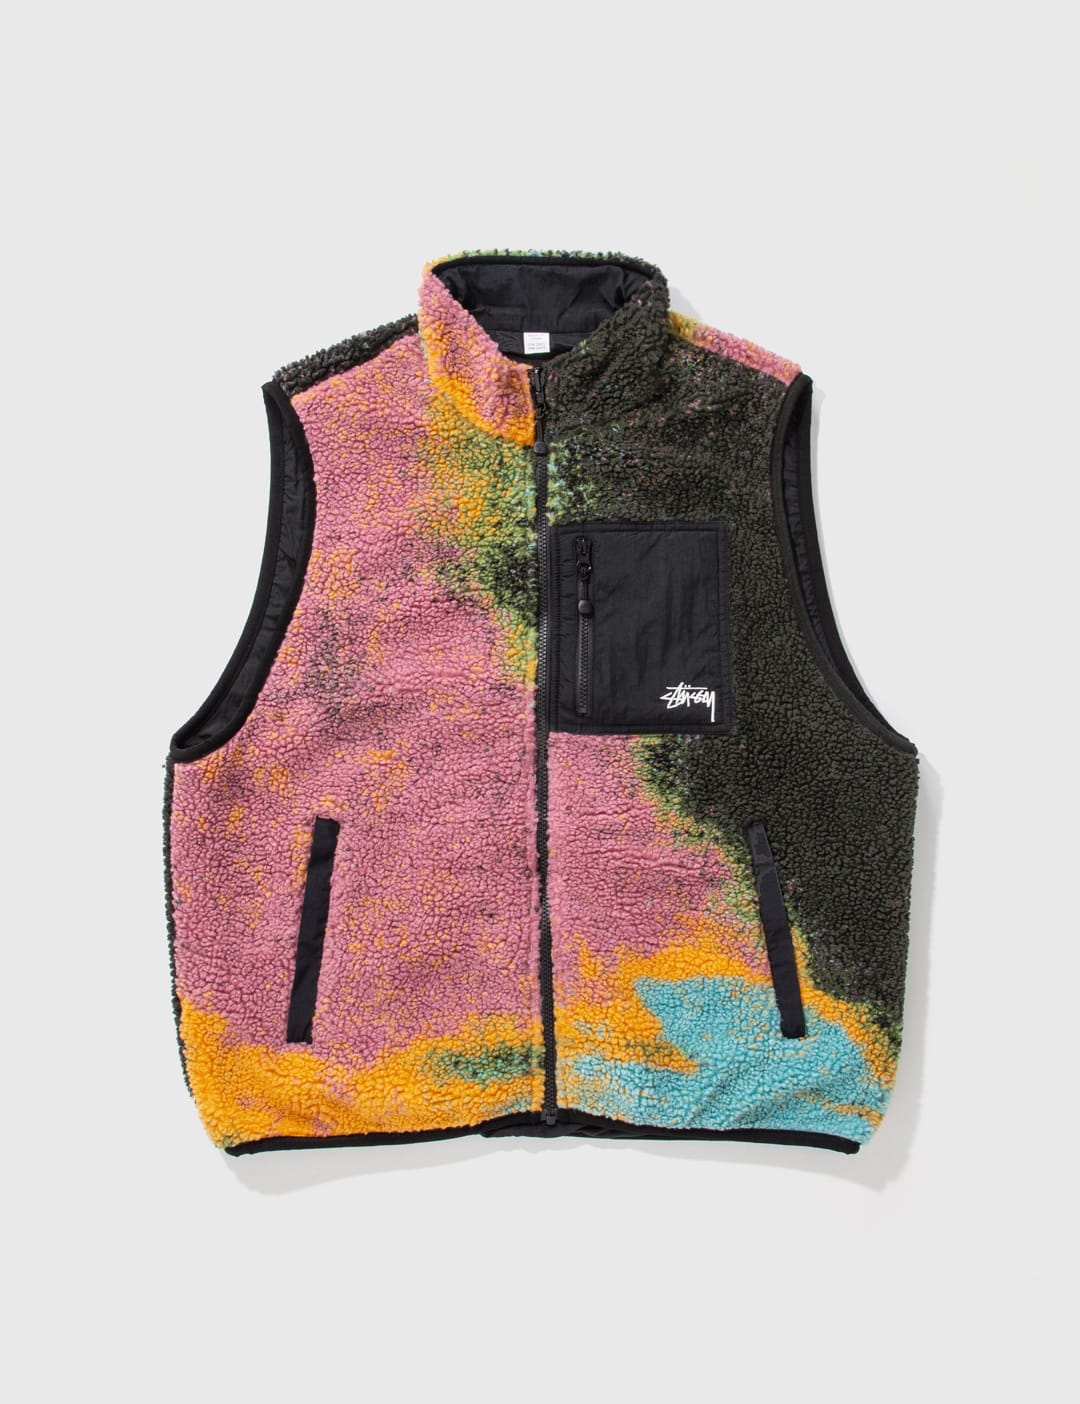 Stüssy - Jaquard Dye Sherpa Vest | HBX - Globally Curated Fashion